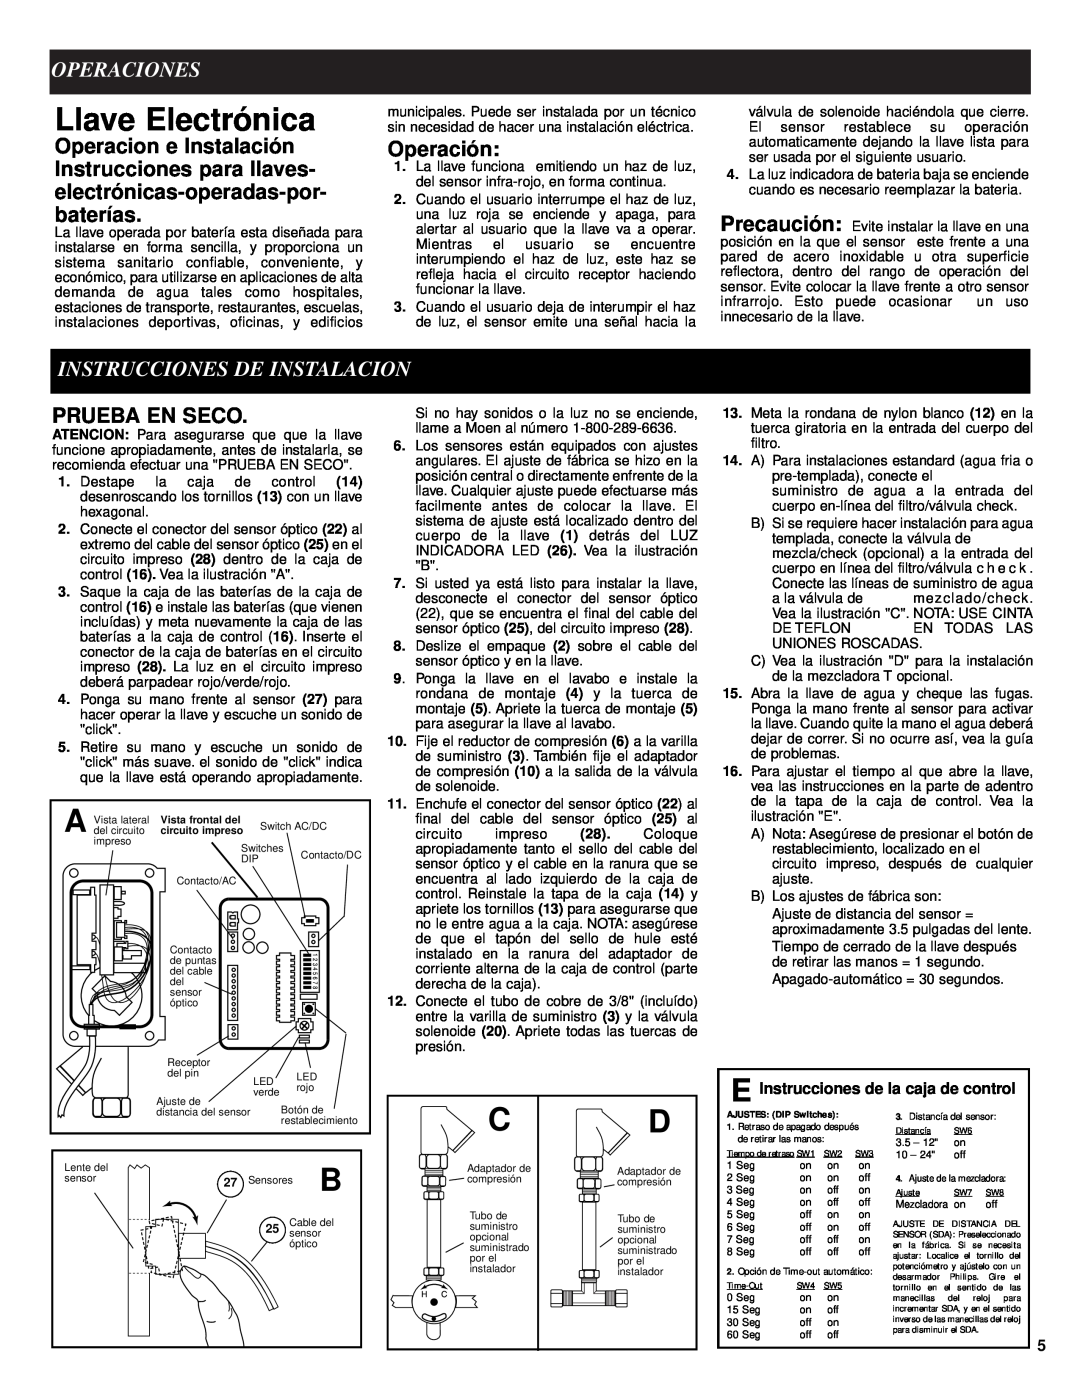 Moen 8302 manual Llave Electrónica, Operaciones, Instrucciones De Instalacion, Operación, Prueba En Seco 